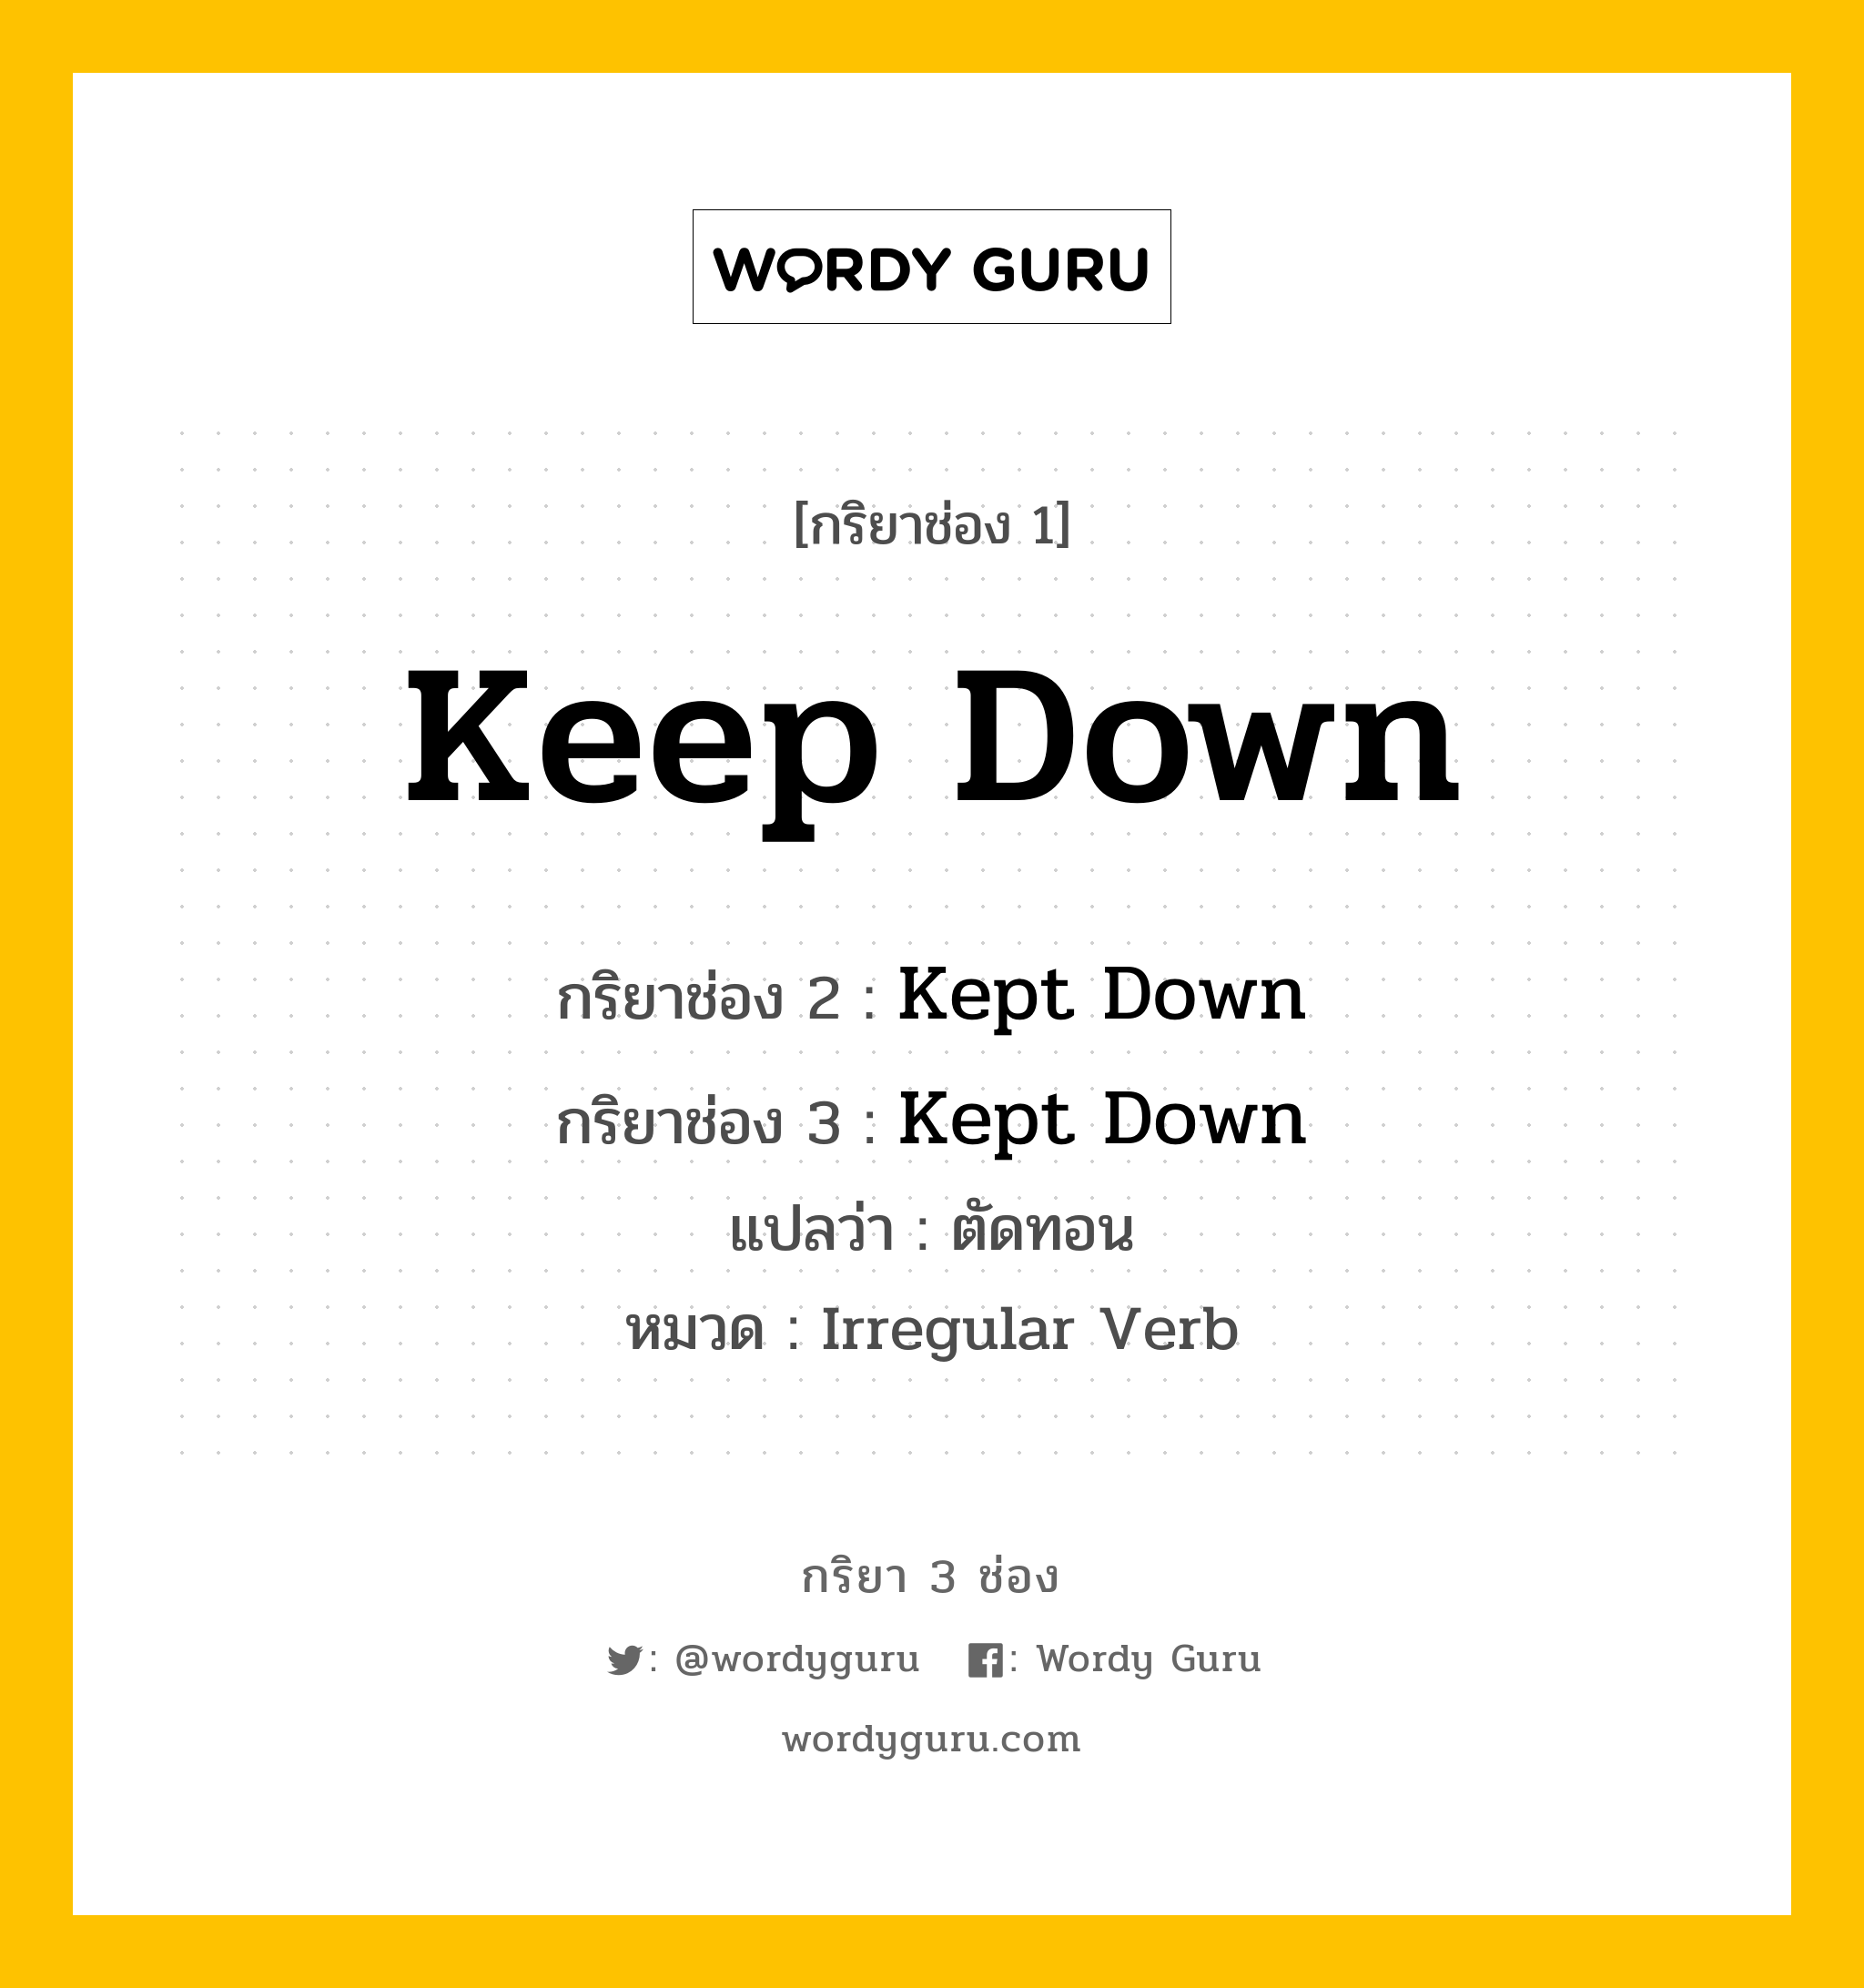 กริยา 3 ช่อง: Keep Down ช่อง 2 Keep Down ช่อง 3 คืออะไร, กริยาช่อง 1 Keep Down กริยาช่อง 2 Kept Down กริยาช่อง 3 Kept Down แปลว่า ตัดทอน หมวด Irregular Verb หมวด Irregular Verb